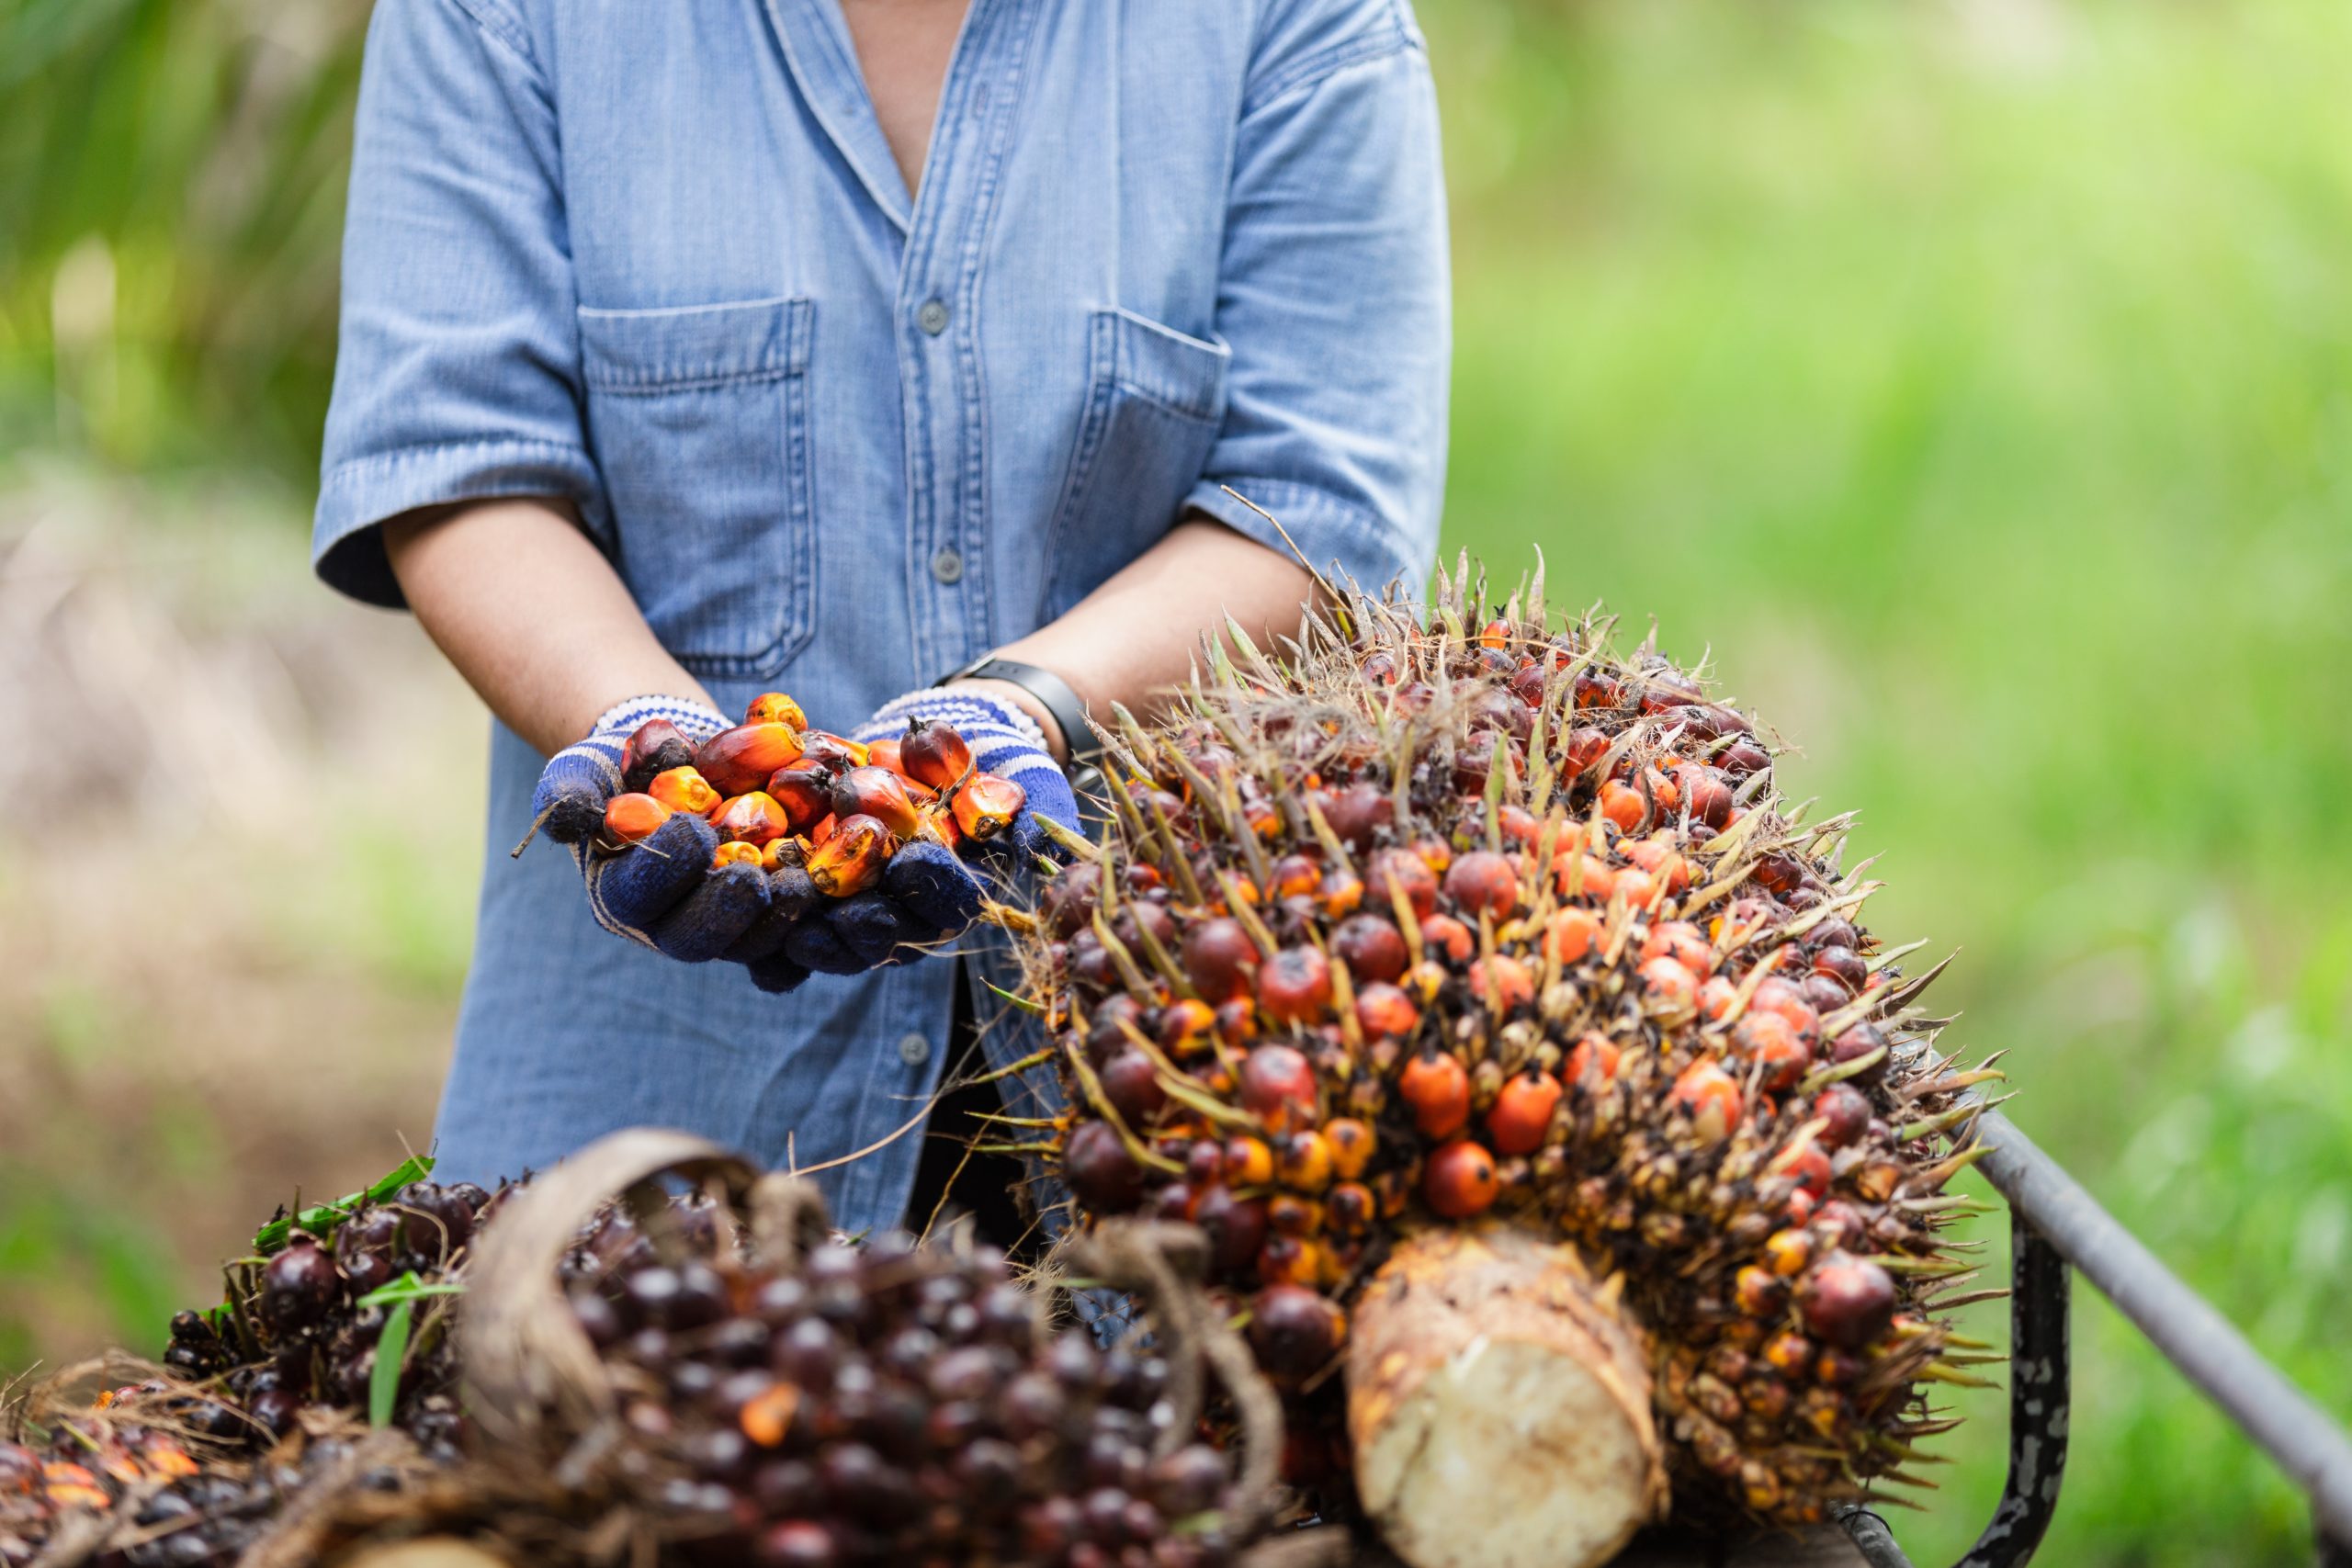 Palm oil alternative